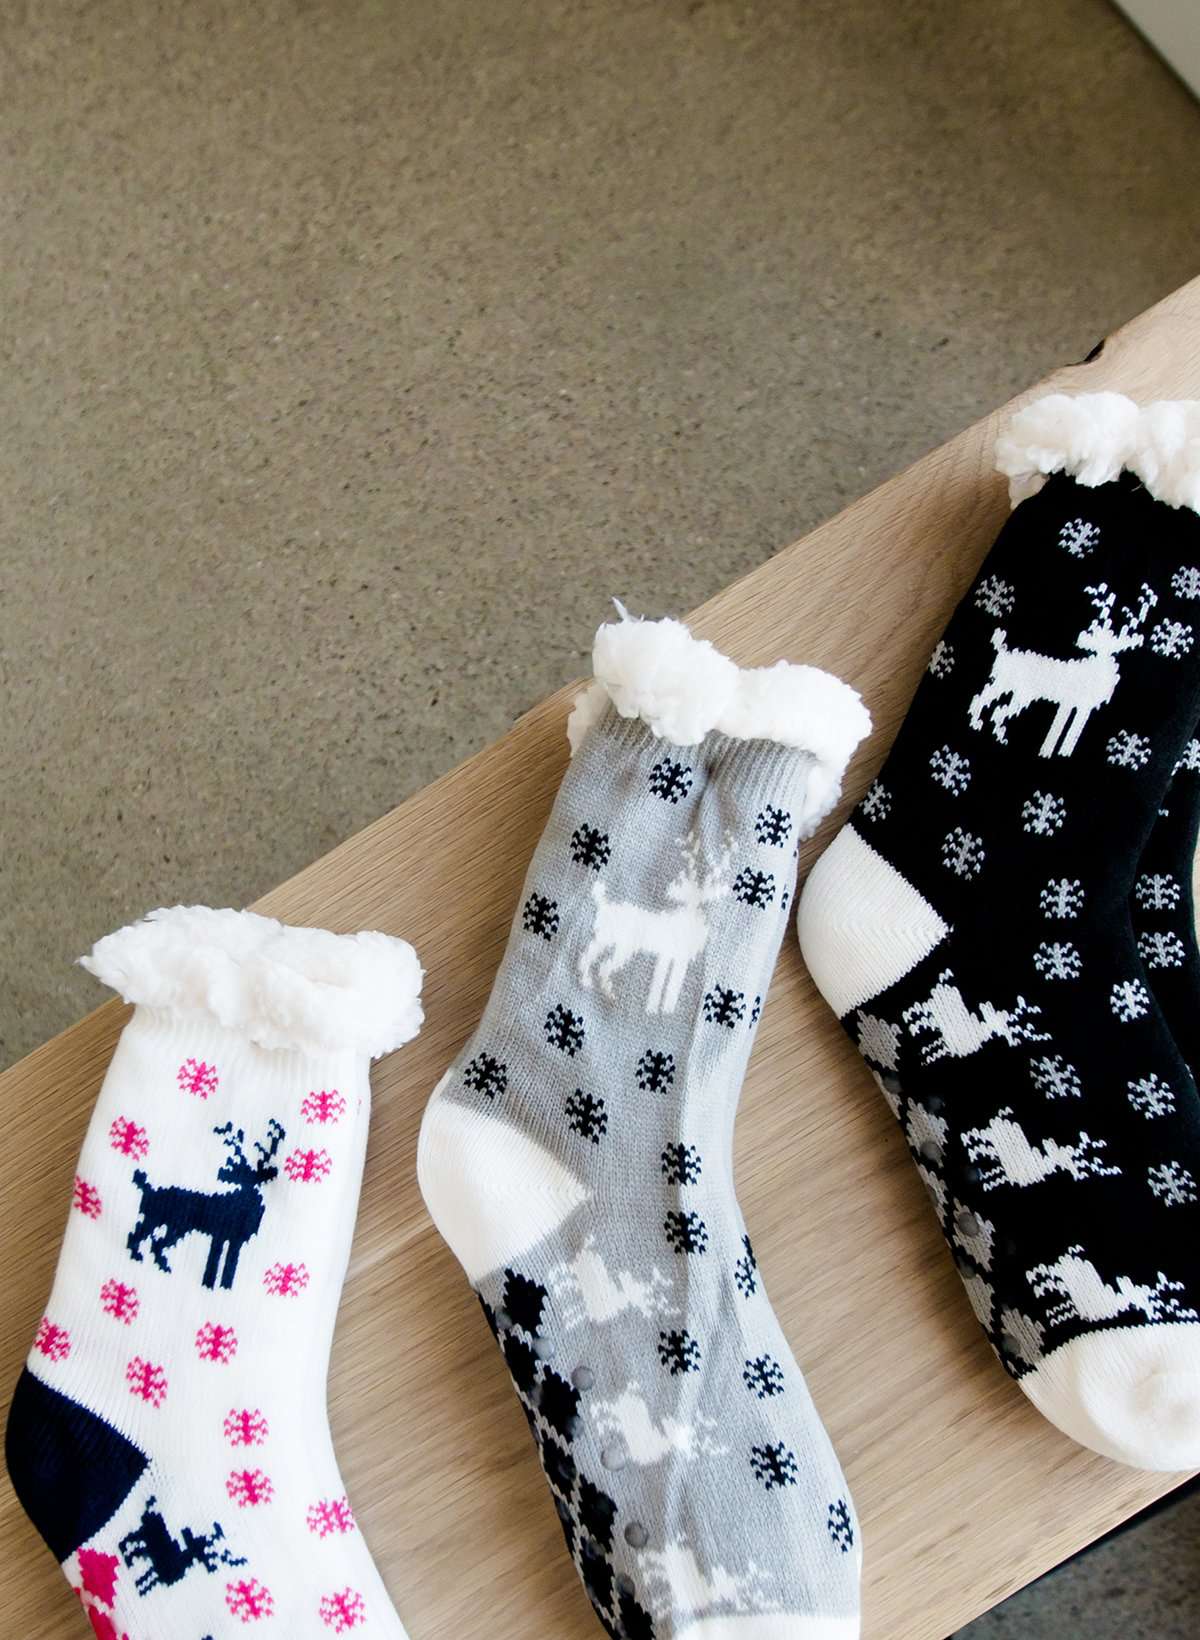 Reindeer Christmas scene slipper socks in gray, cream and black.